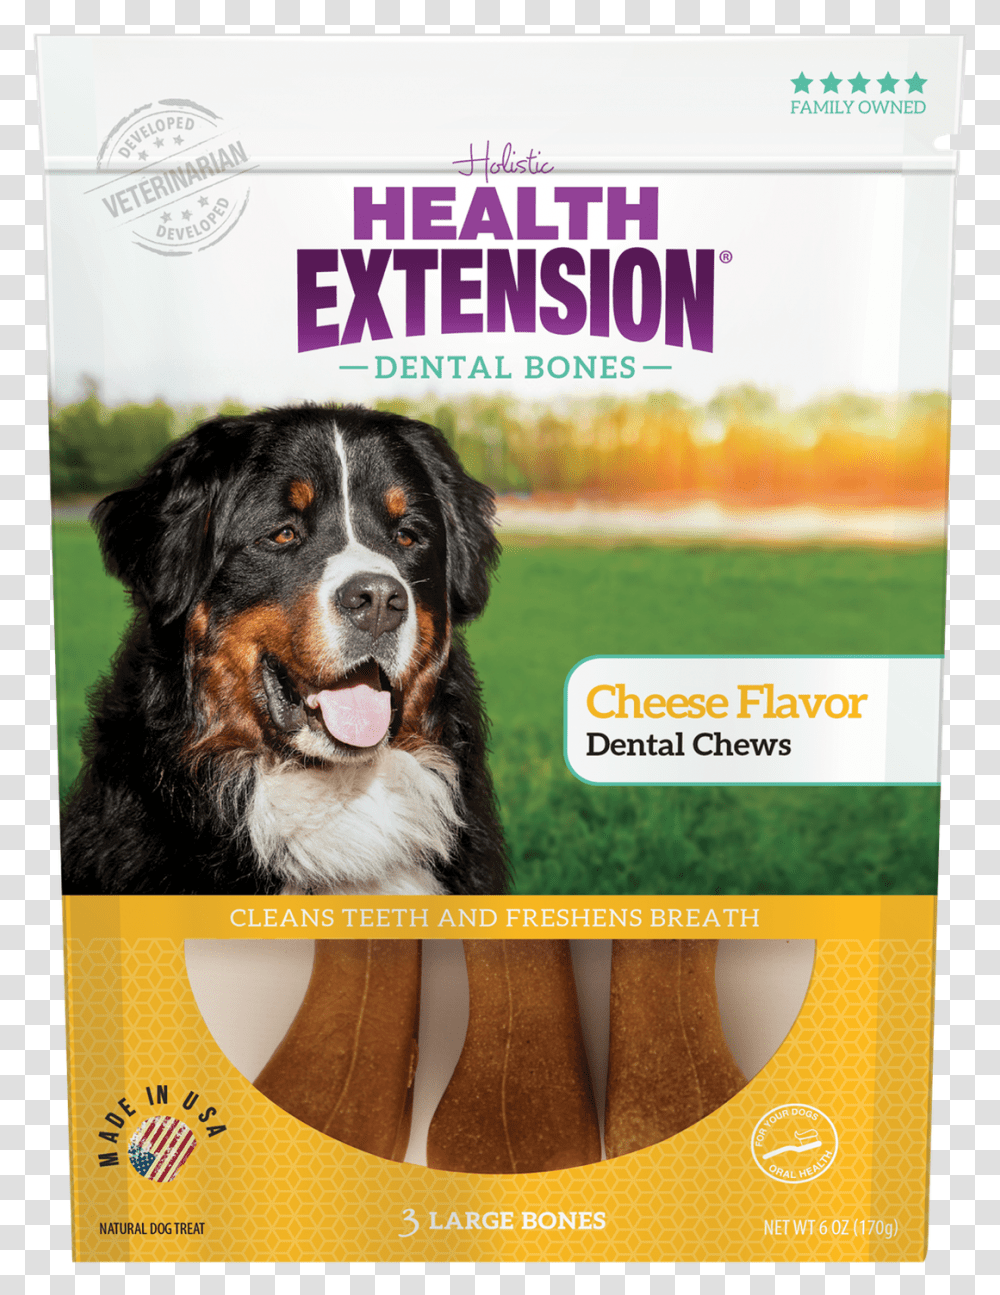 Health Extension Dental Bones, Advertisement, Poster, Appenzeller, Dog Transparent Png